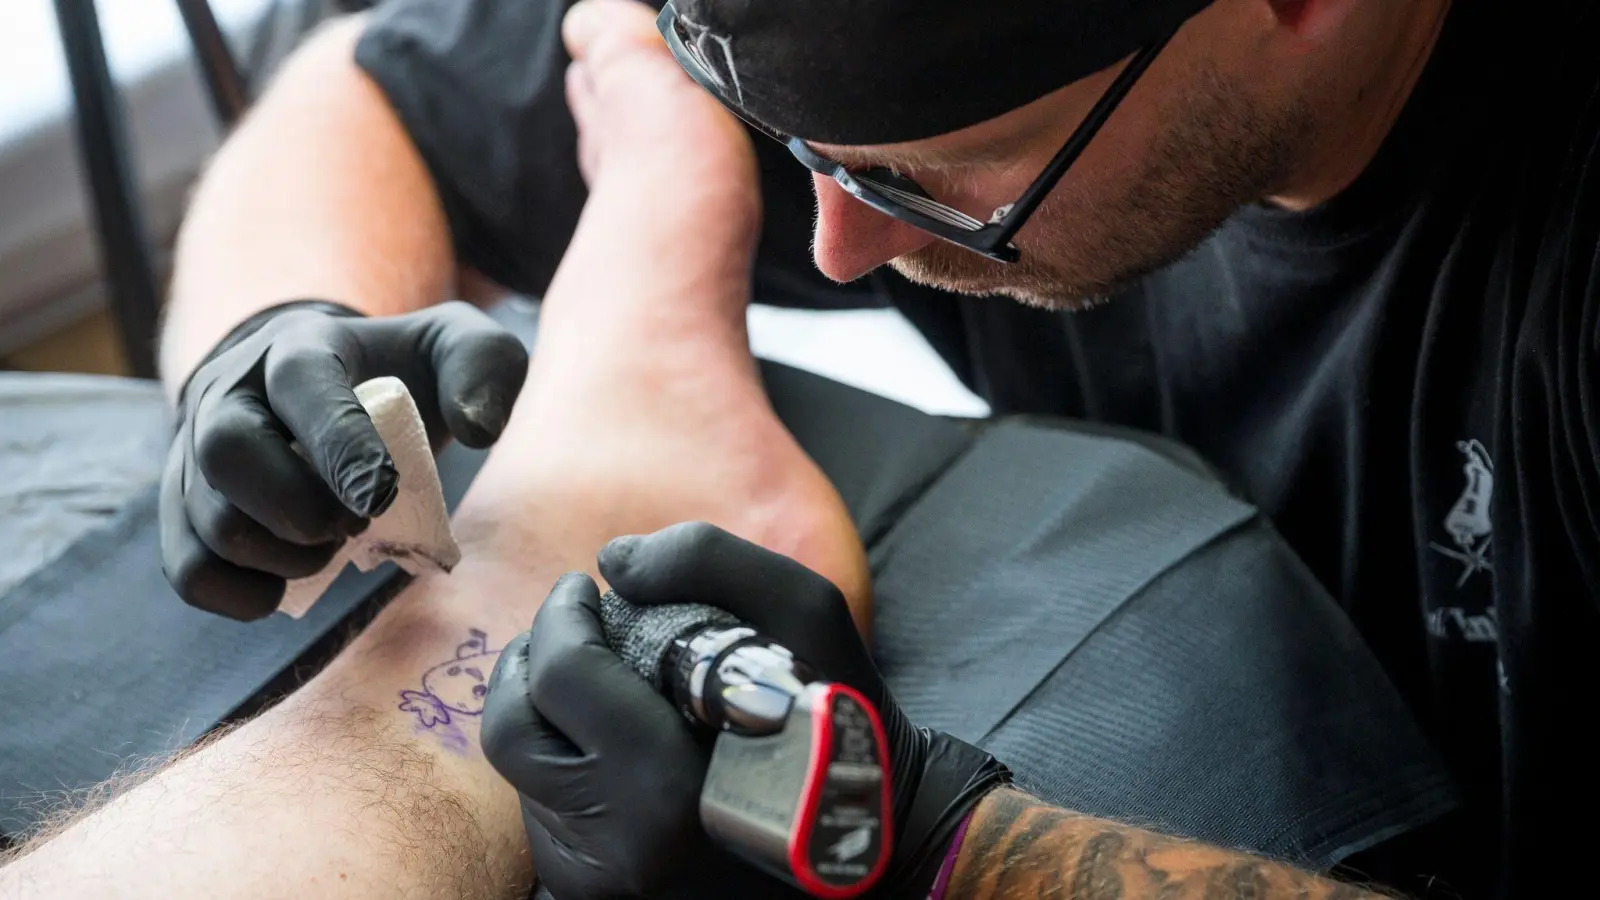 Tätowierer Tobias Hilfenhaus tätowiert in seinem mobilen Tattoo-Studio eine Karotte. (Foto: Daniel Vogl/dpa)